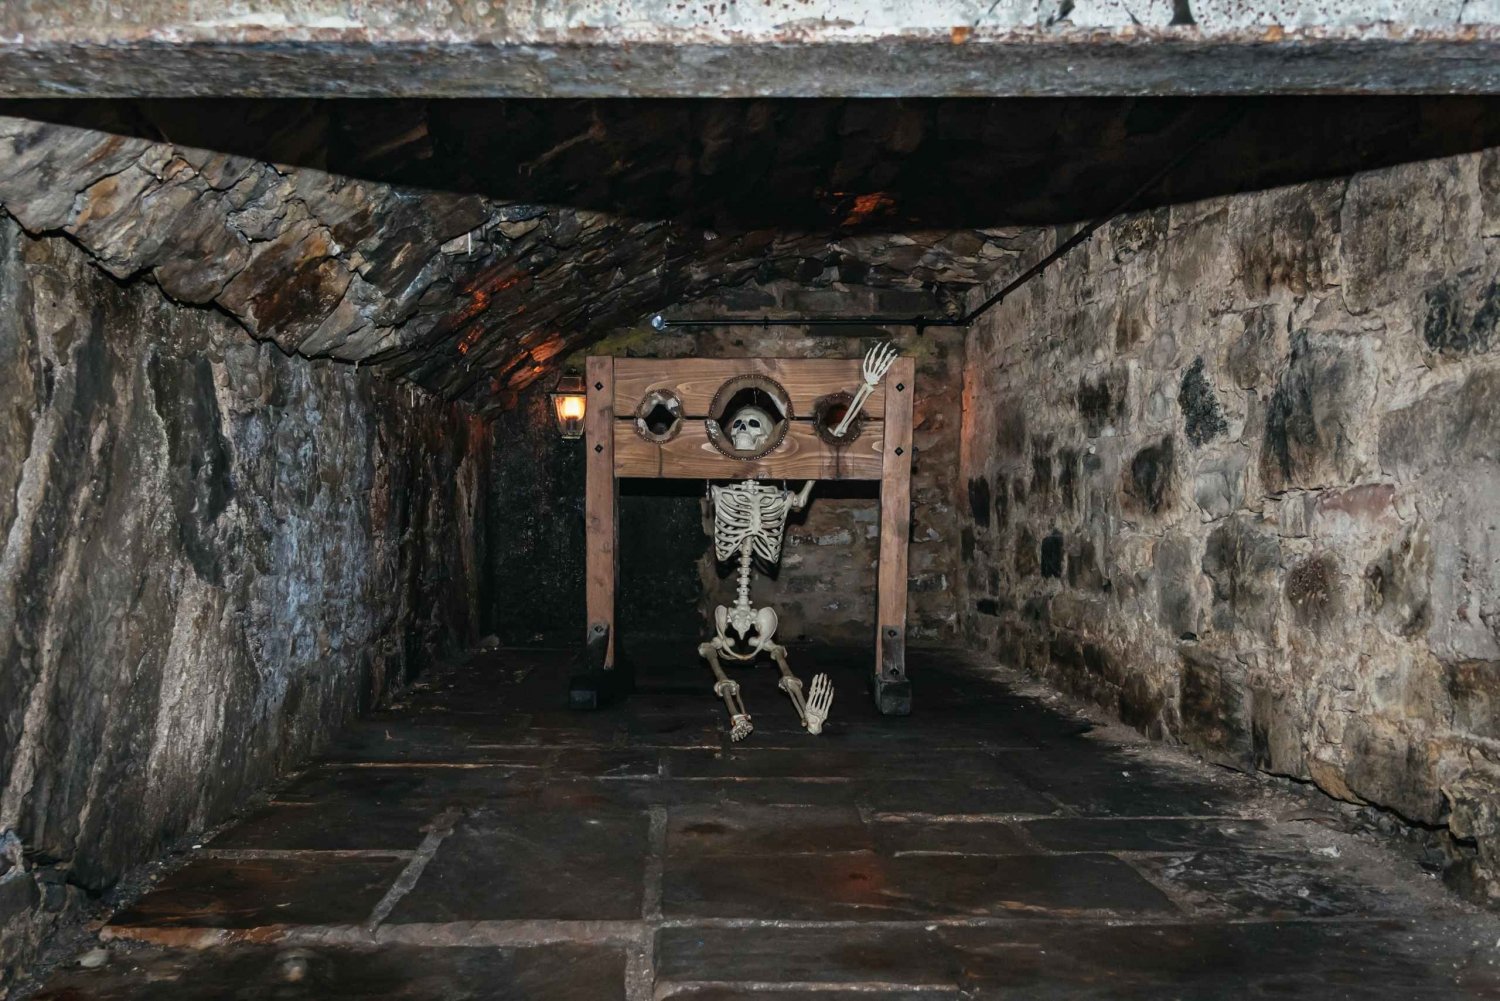 Edimburgo: tour storico della Città Vecchia e dei sotterranei